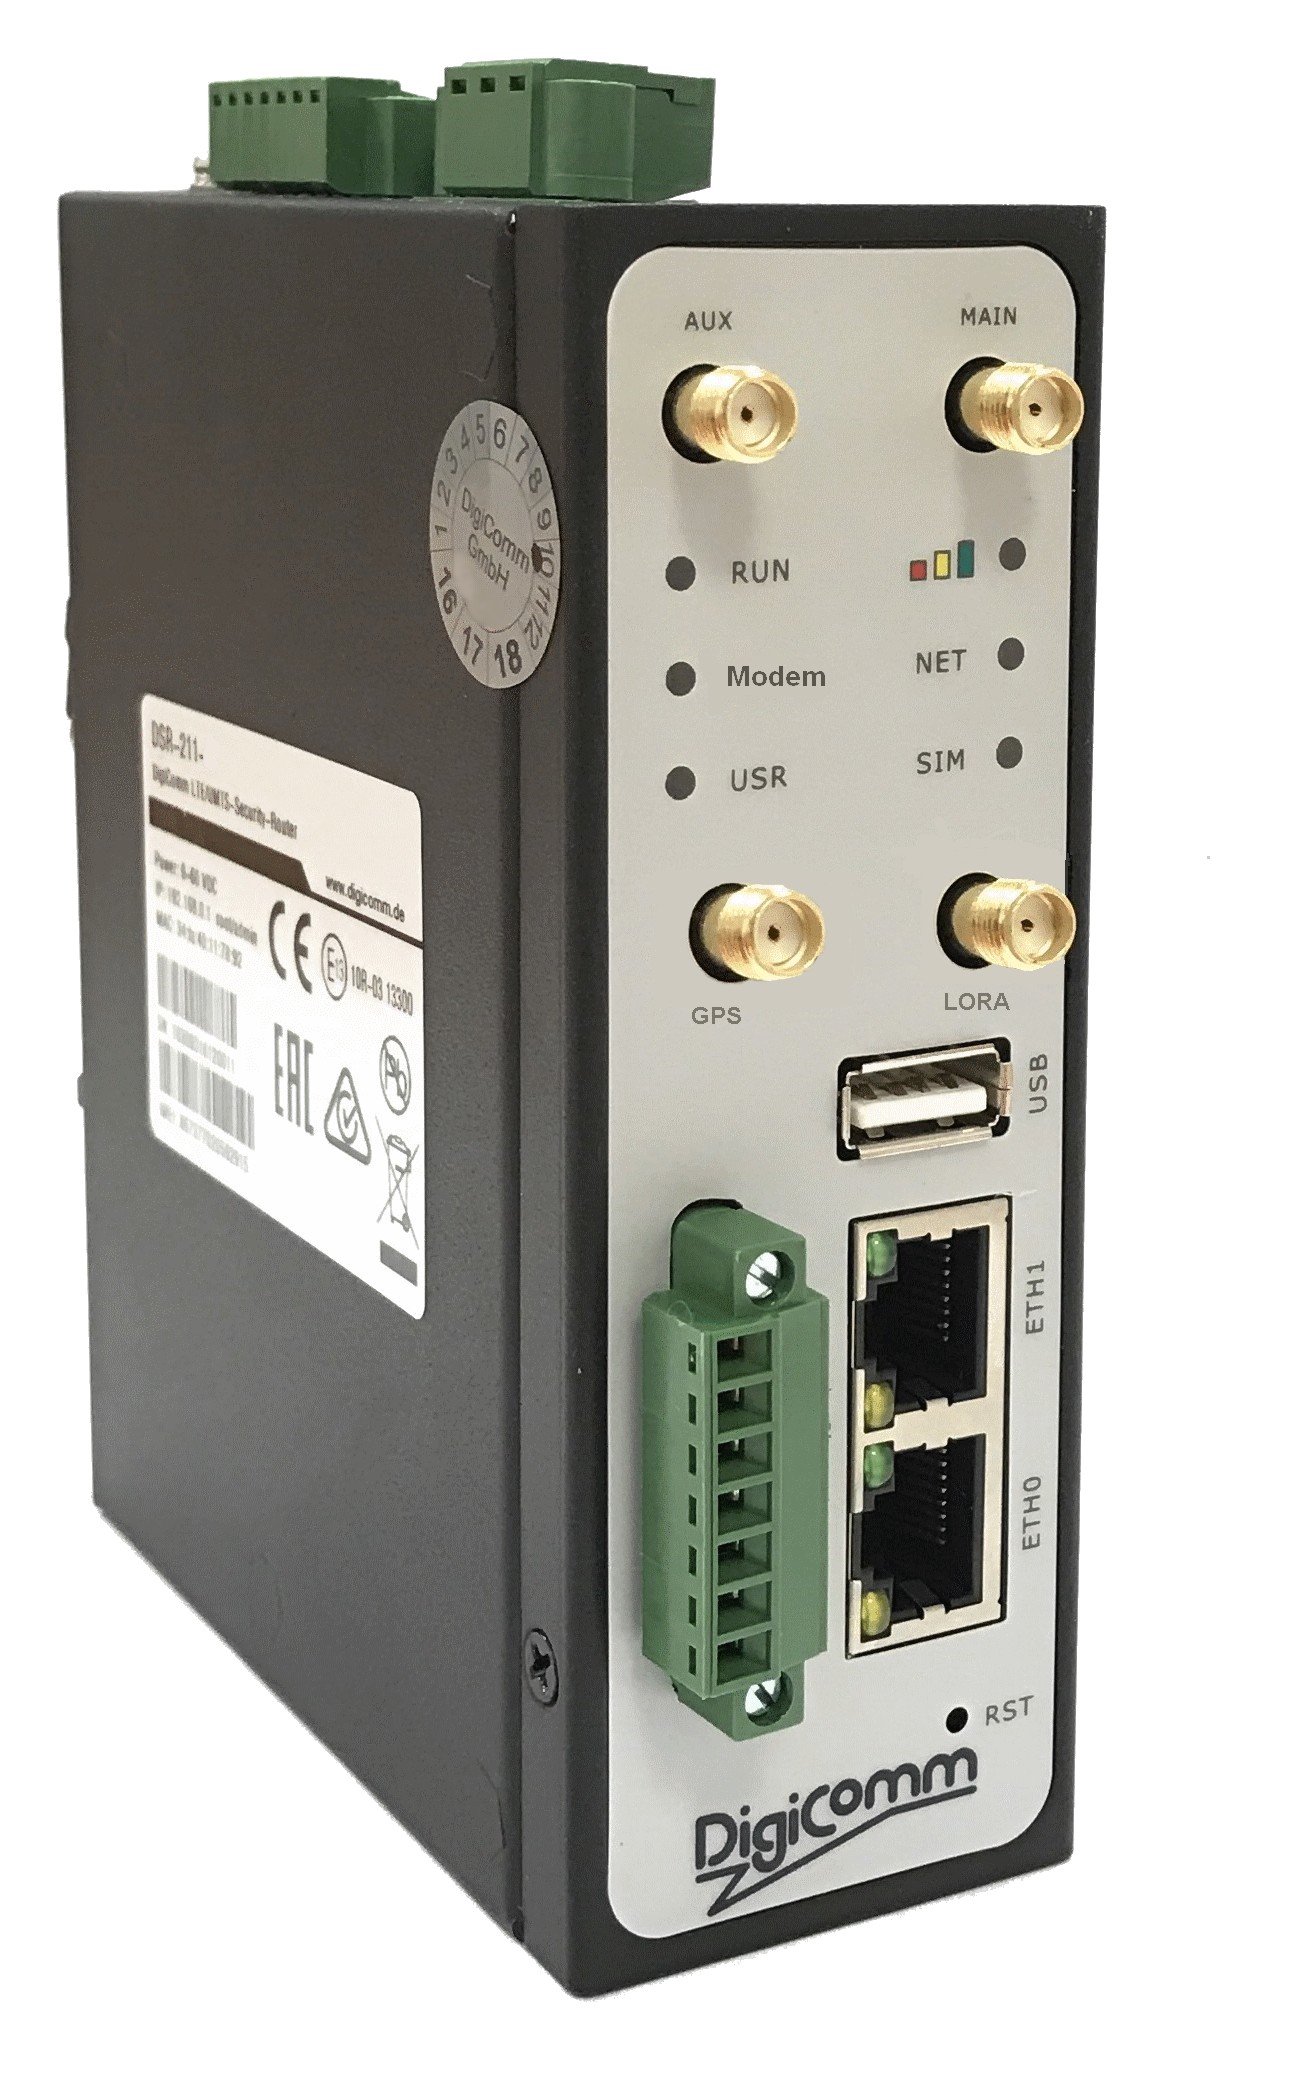 DSR-211-LG Industrial LoRaWAN Gateway / LTE-Router